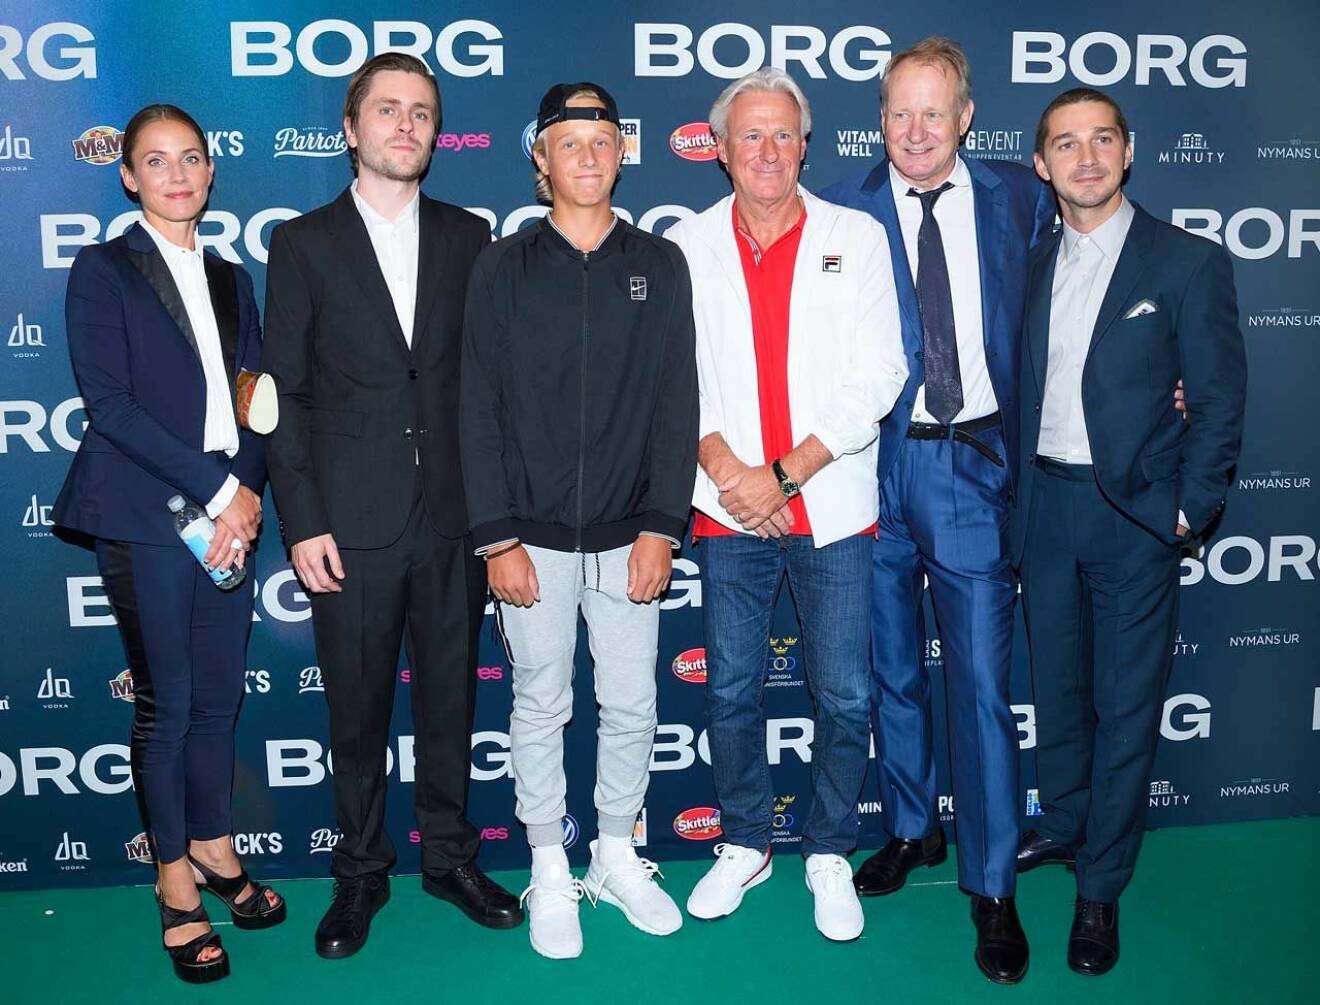 På premiären av filmen, Borg, 2017. Skådespelarna Tuva Novotny, Sverrir Gudnason, sonen Leo Borg, Björn, Stellan Skarsgård och Shia LaBeouf. 